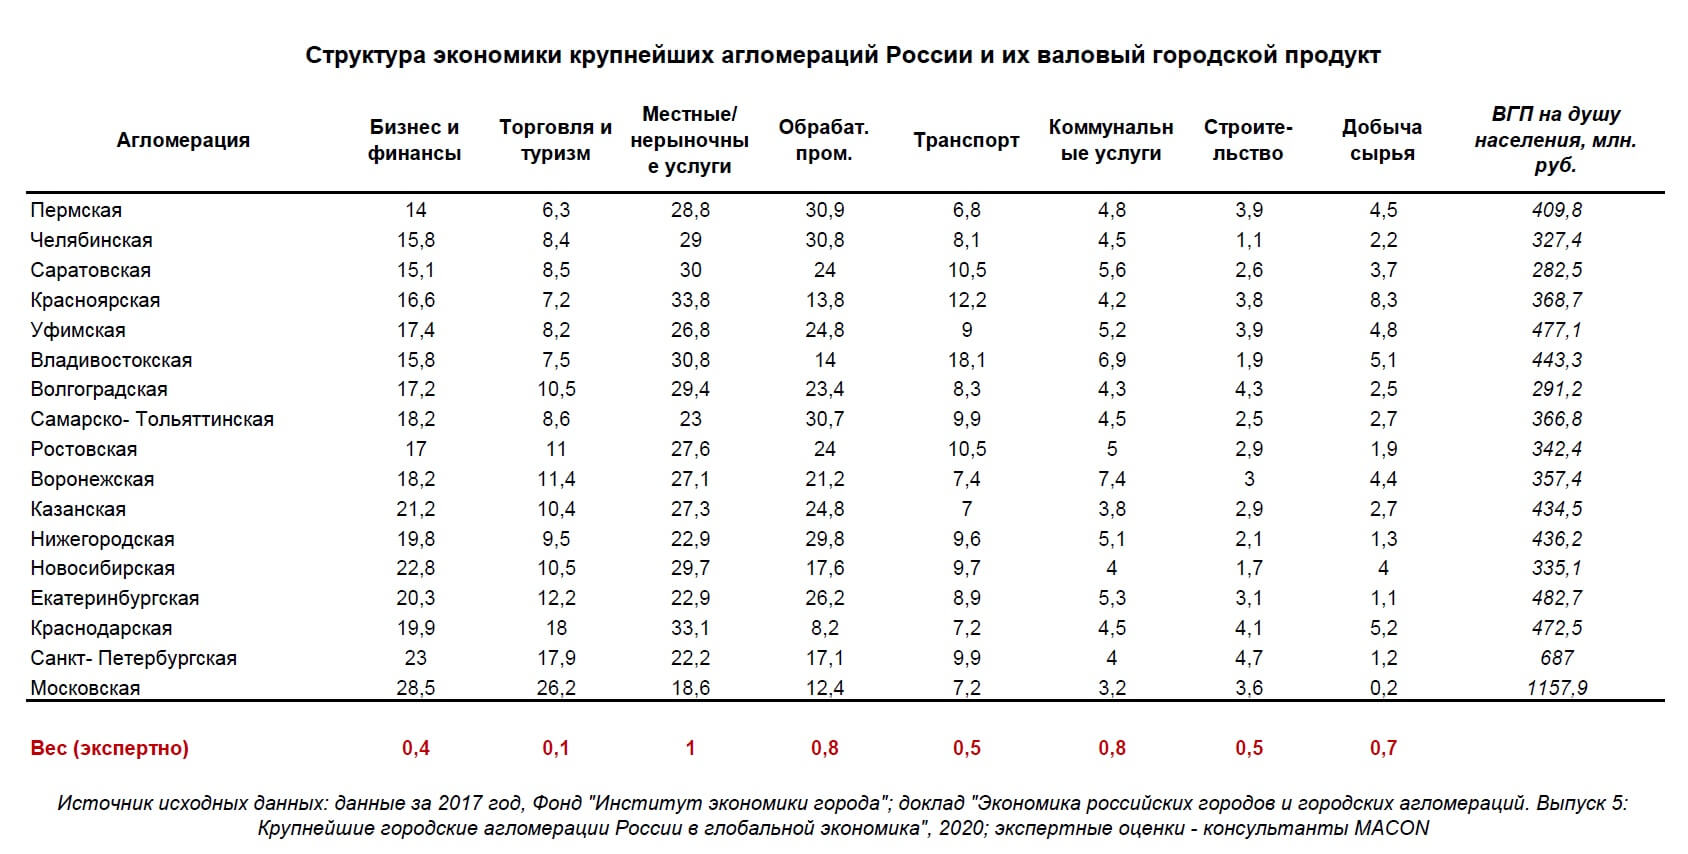 โครงสร้างของเศรษฐกิจและ GDP ของกลุ่ม บริษัท รัสเซีย